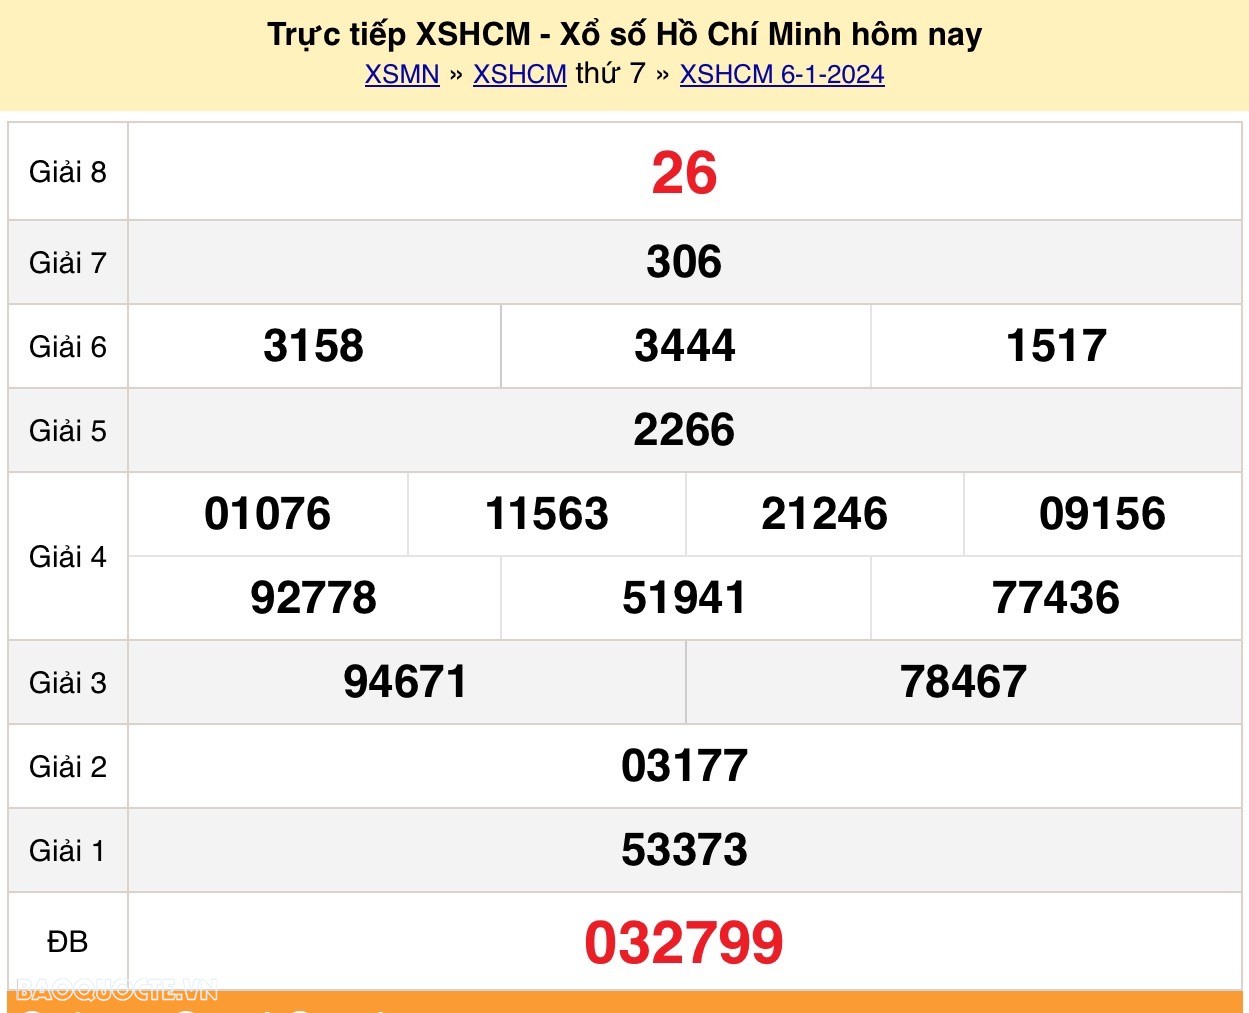 XSHCM 6/1, trực tiếp kết quả xổ số TP Hồ Chí Minh hôm nay 6/1/2024. XSHCM thứ 7